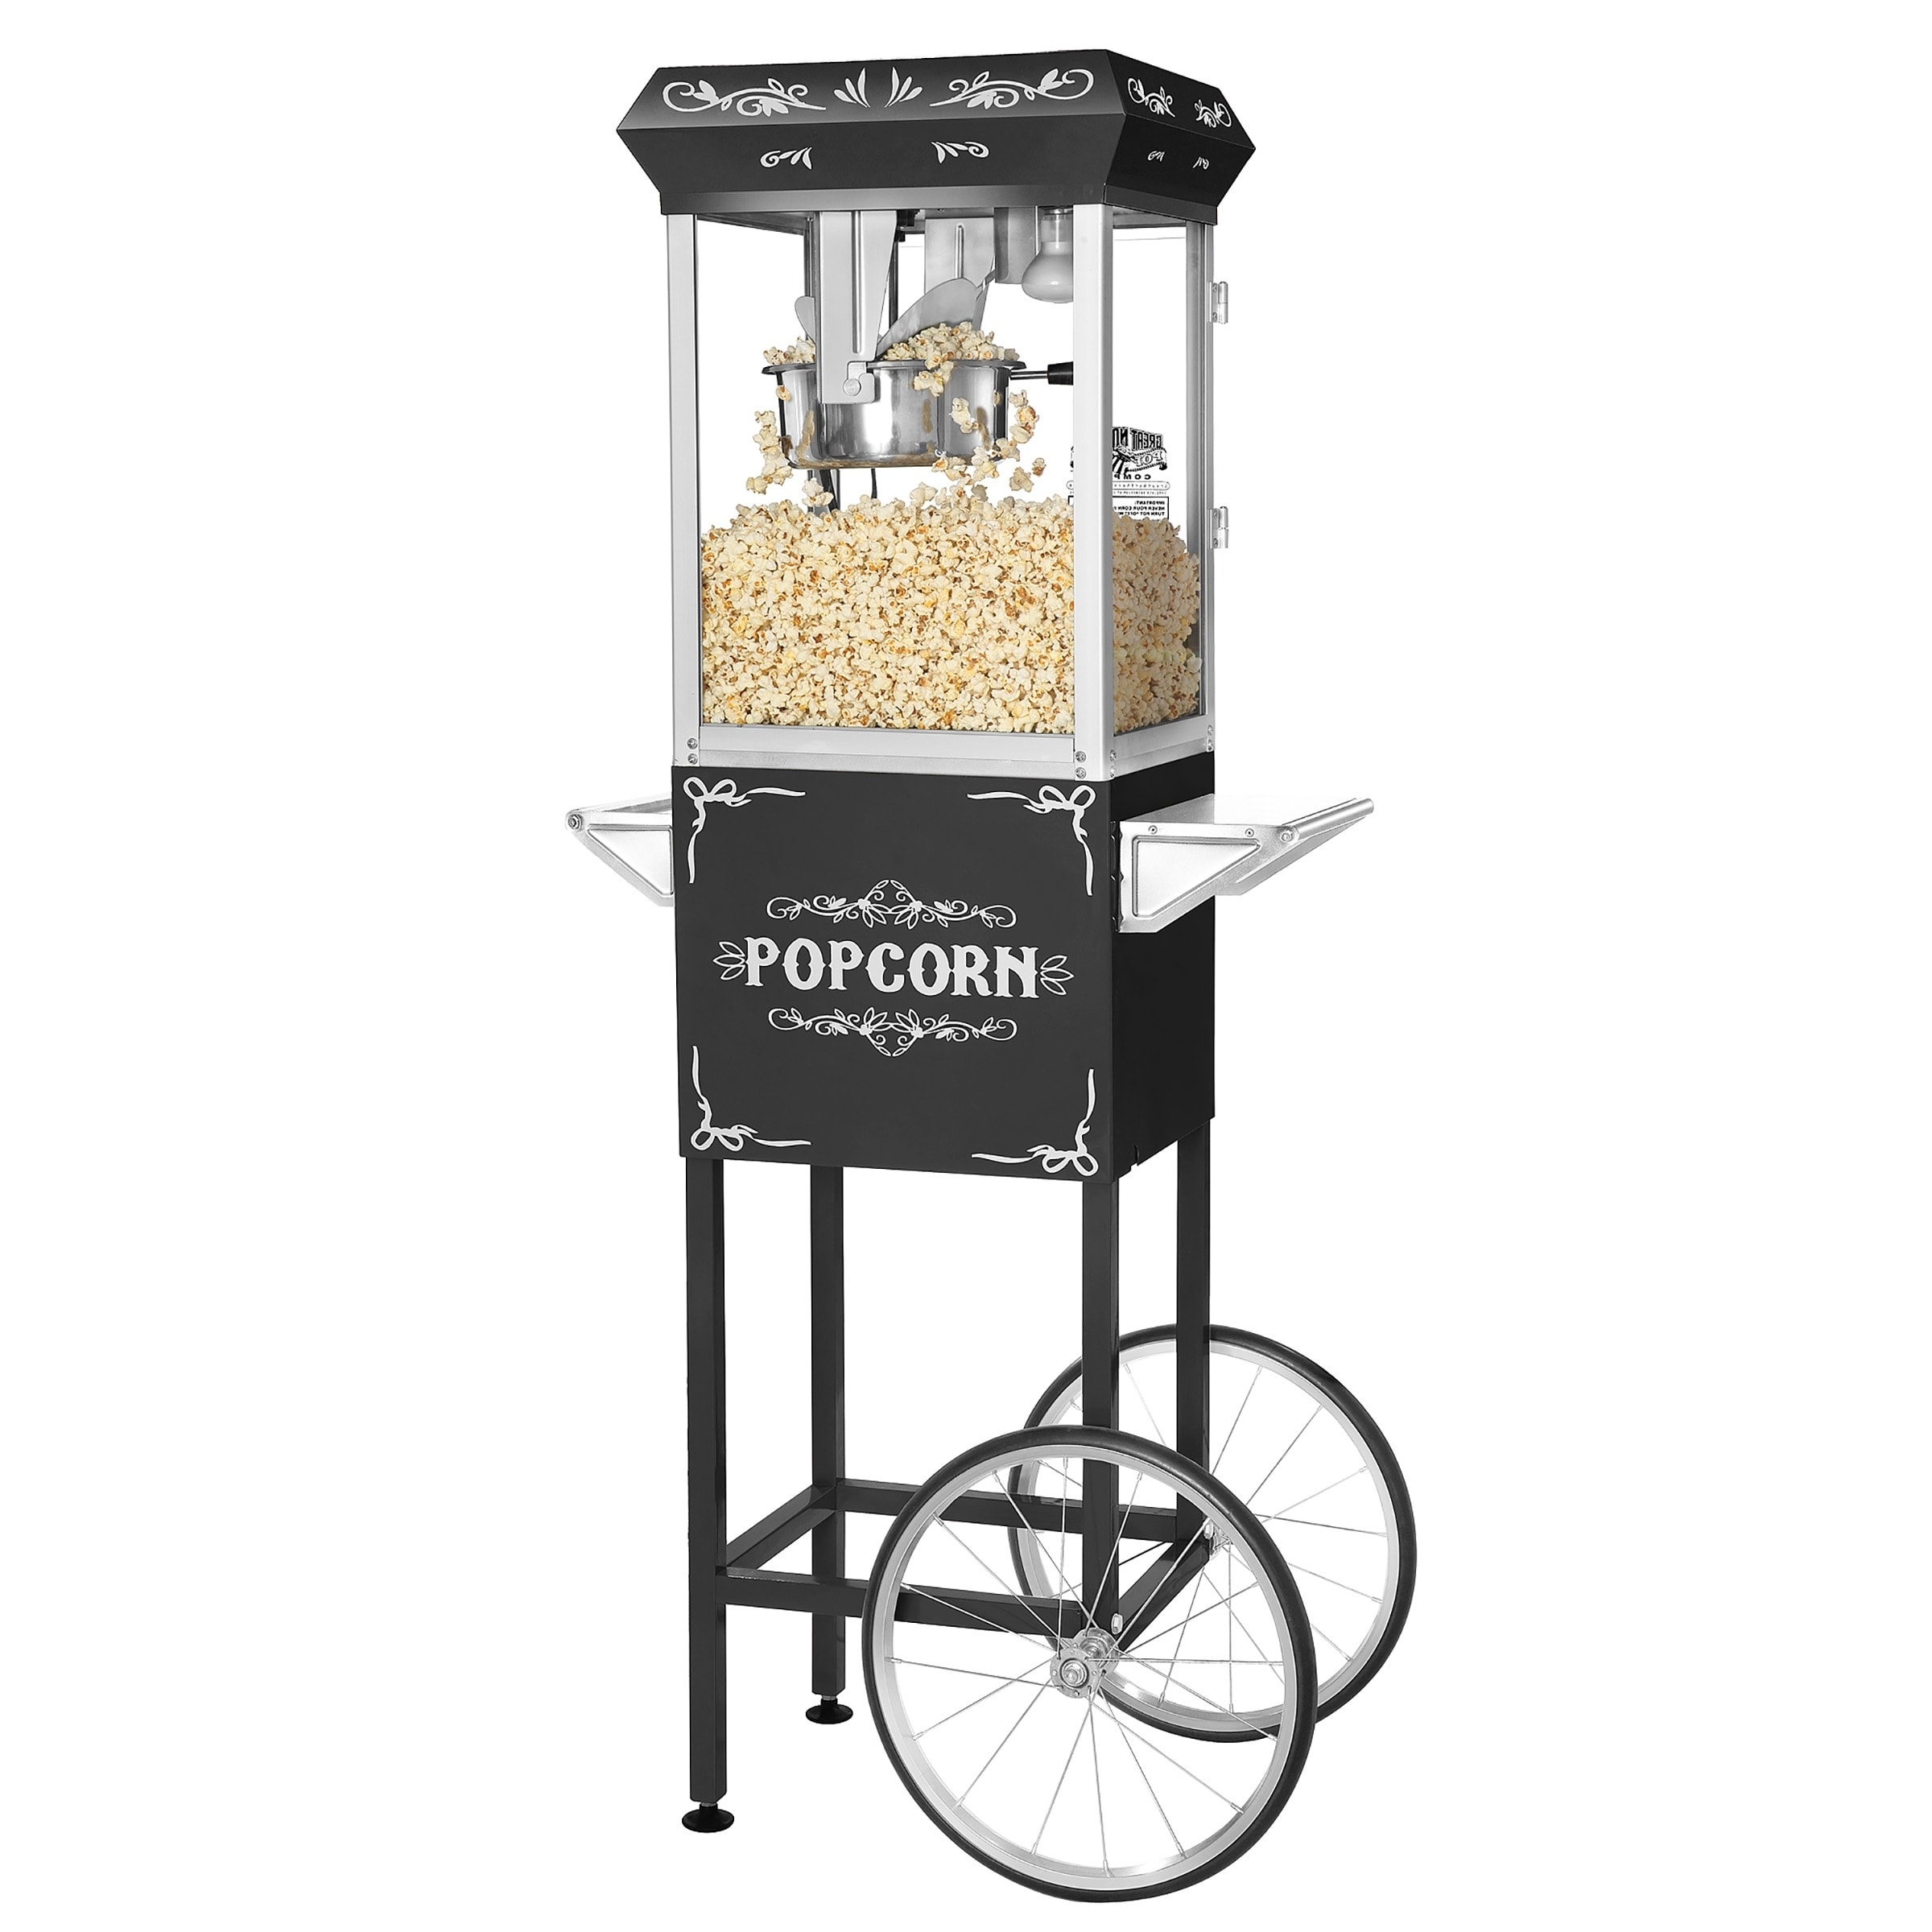 https://ak1.ostkcdn.com/images/products/23462309/Great-Northern-Popcorn-All-Star-Popcorn-Machine-Cart-8oz-8-oz-7d35eb3b-71e3-4cbd-a5df-f8441c449023.jpg